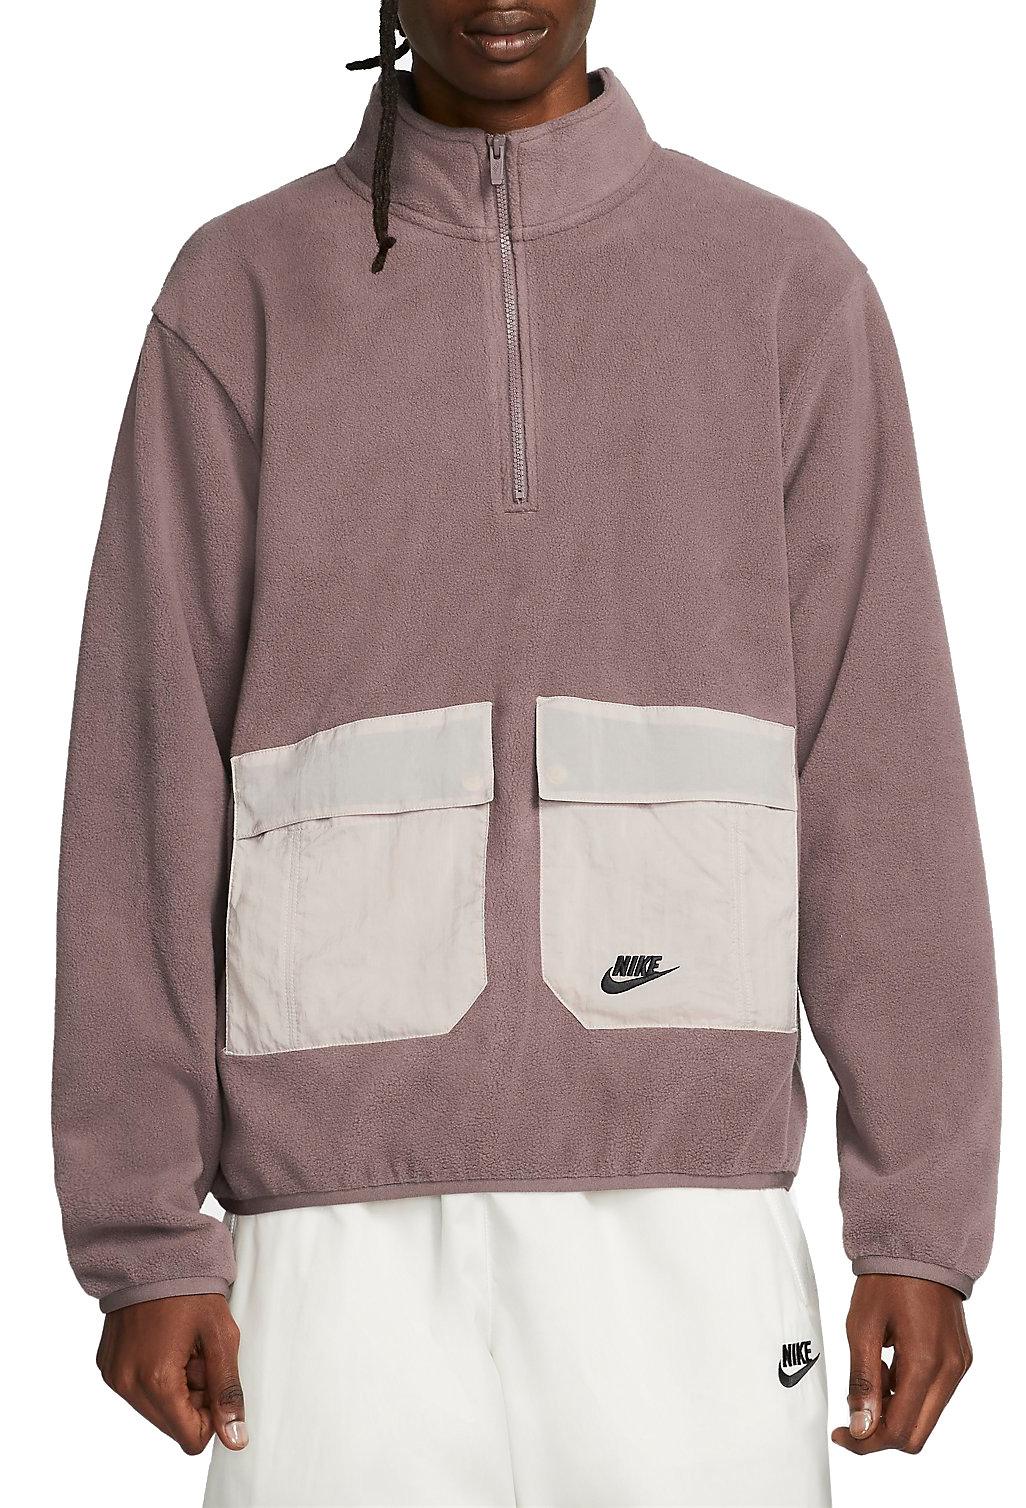 Sweatshirt Nike Men's Sports Utility 1/2-Zip Fleece Top